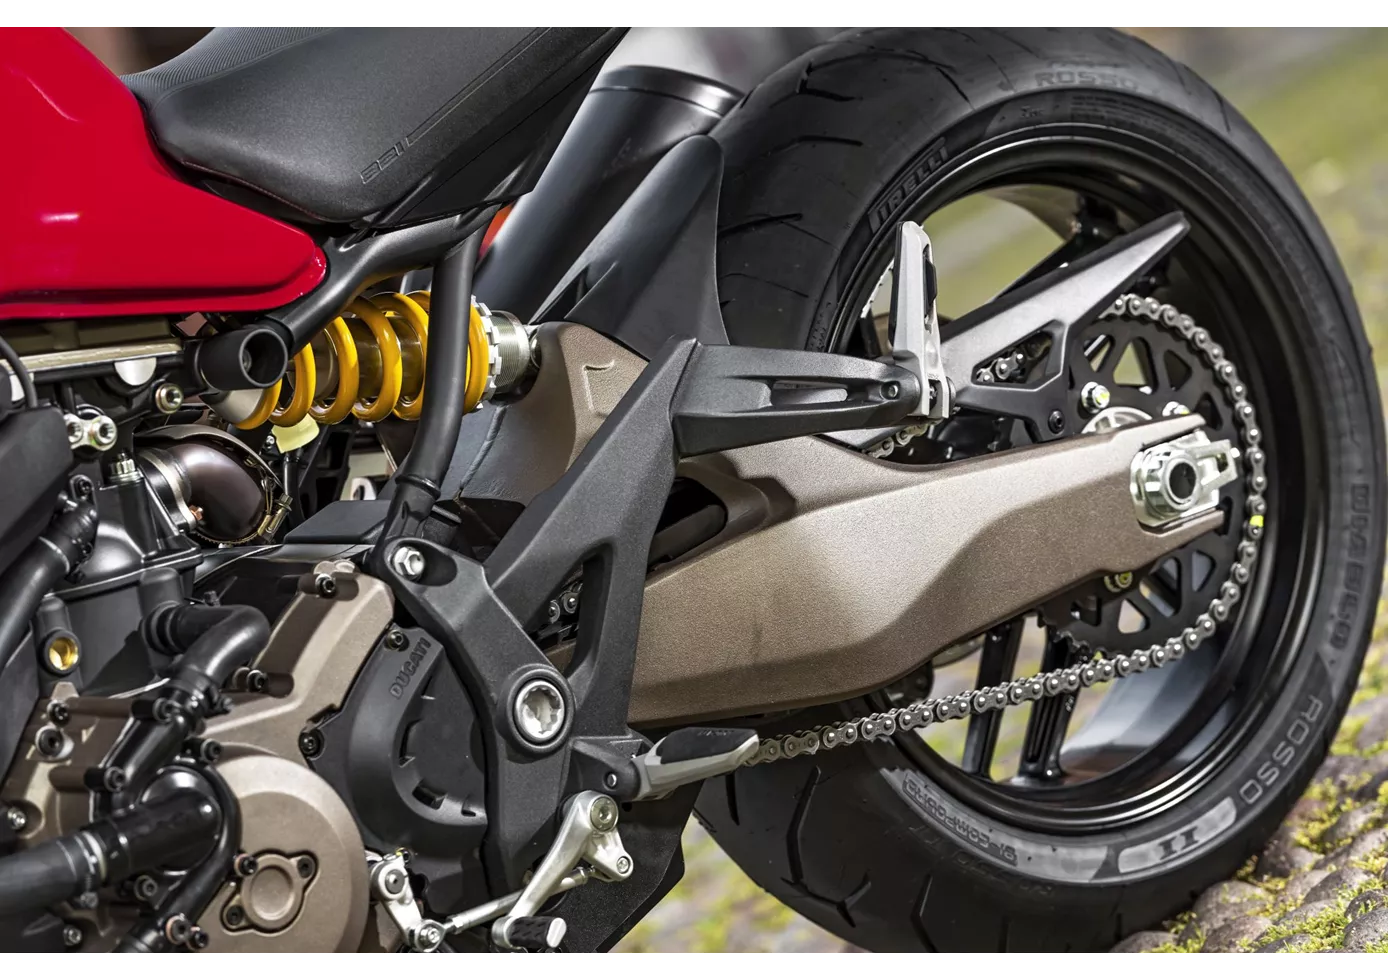 Ducati Monster 821 2015